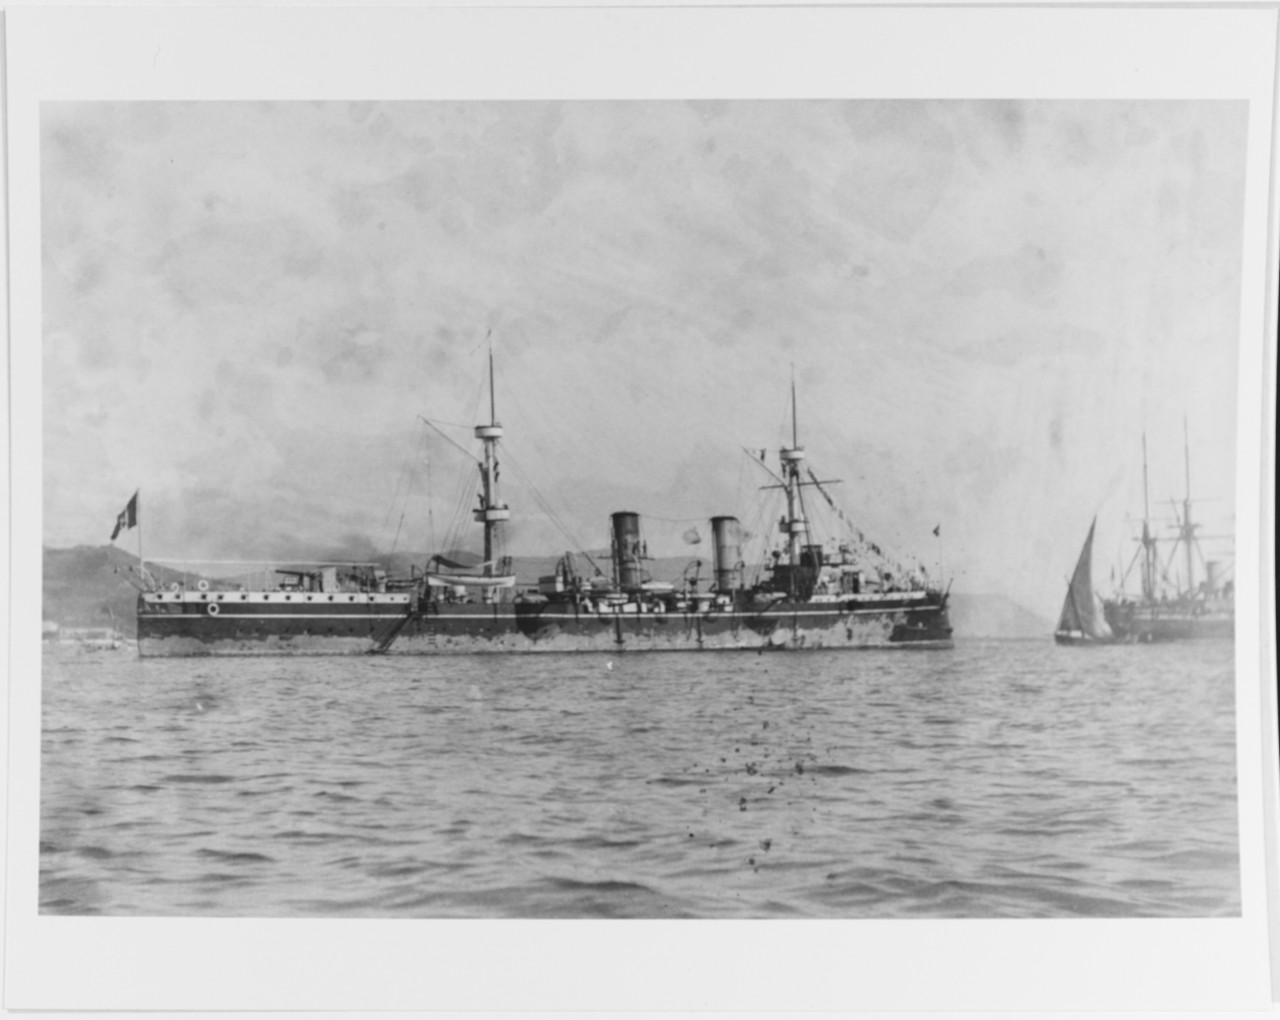 PIEMONTE (Italian Cruiser, 1888-1920)